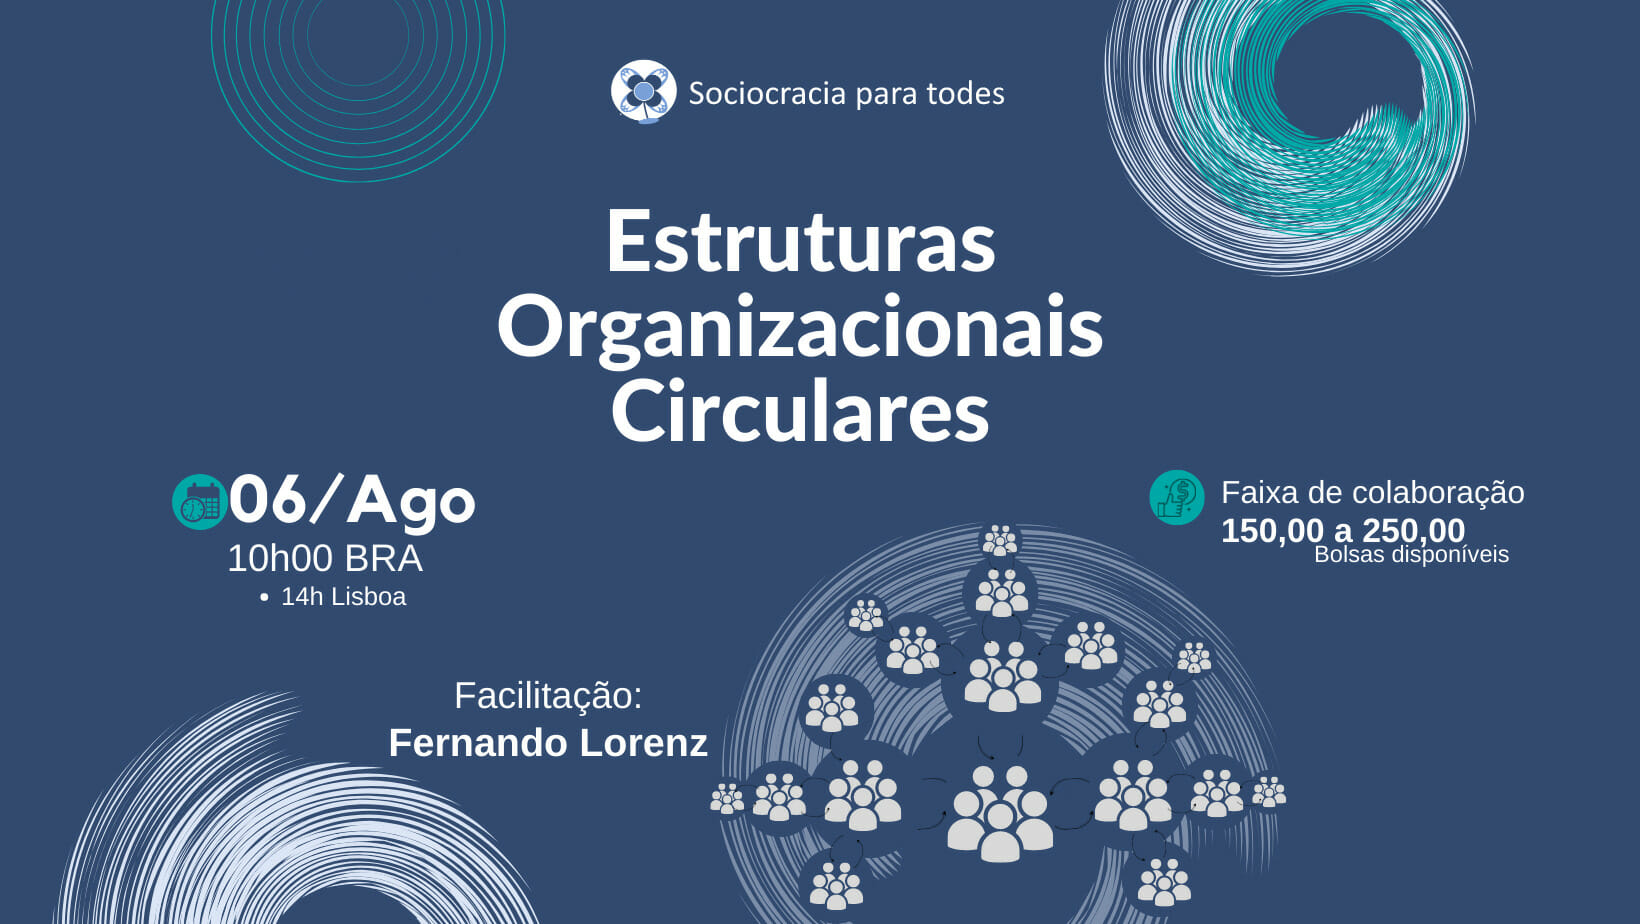 Estruturas Organizacionais Circulares - Estruturas organizacionais circulares - Sociocracy For All